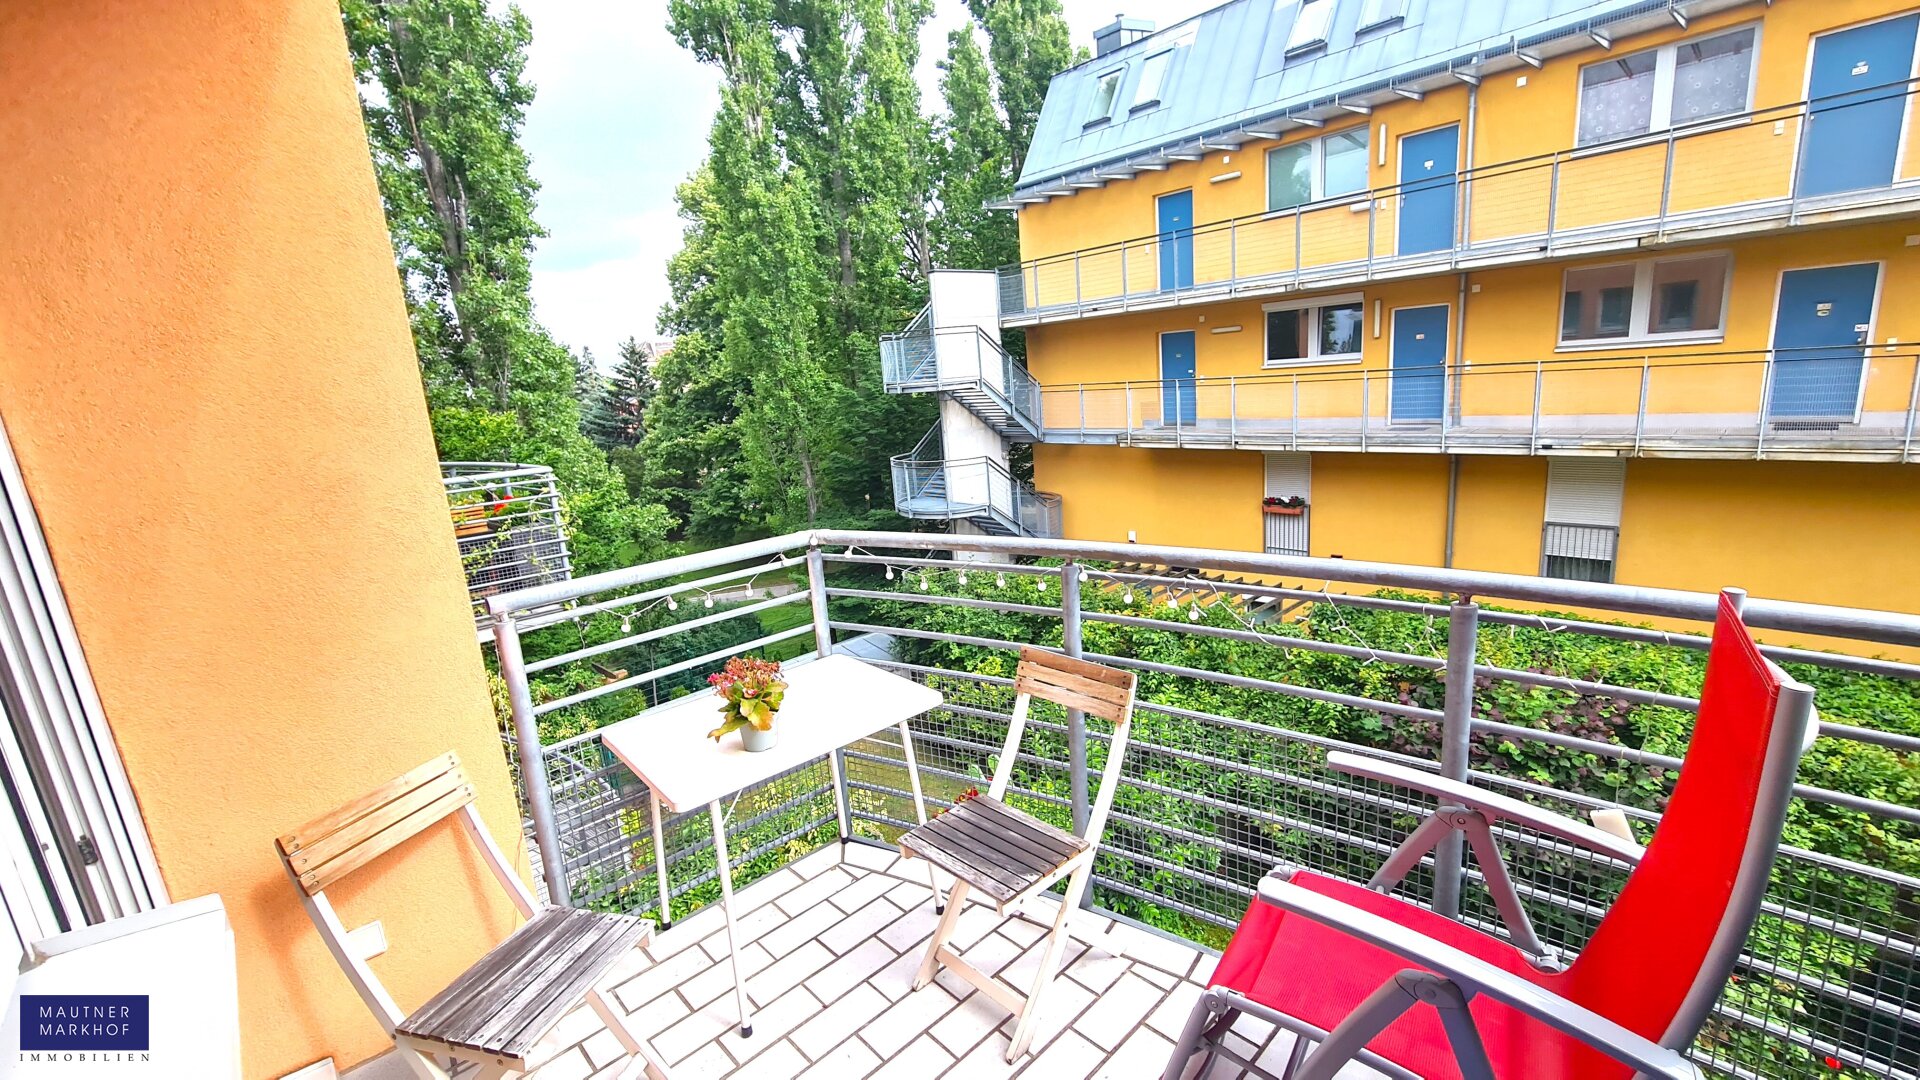 Perfektes 2 Zimmerappartement mit Südbalkon – Ruhelage – Grünblick- U3, S-Bahn!